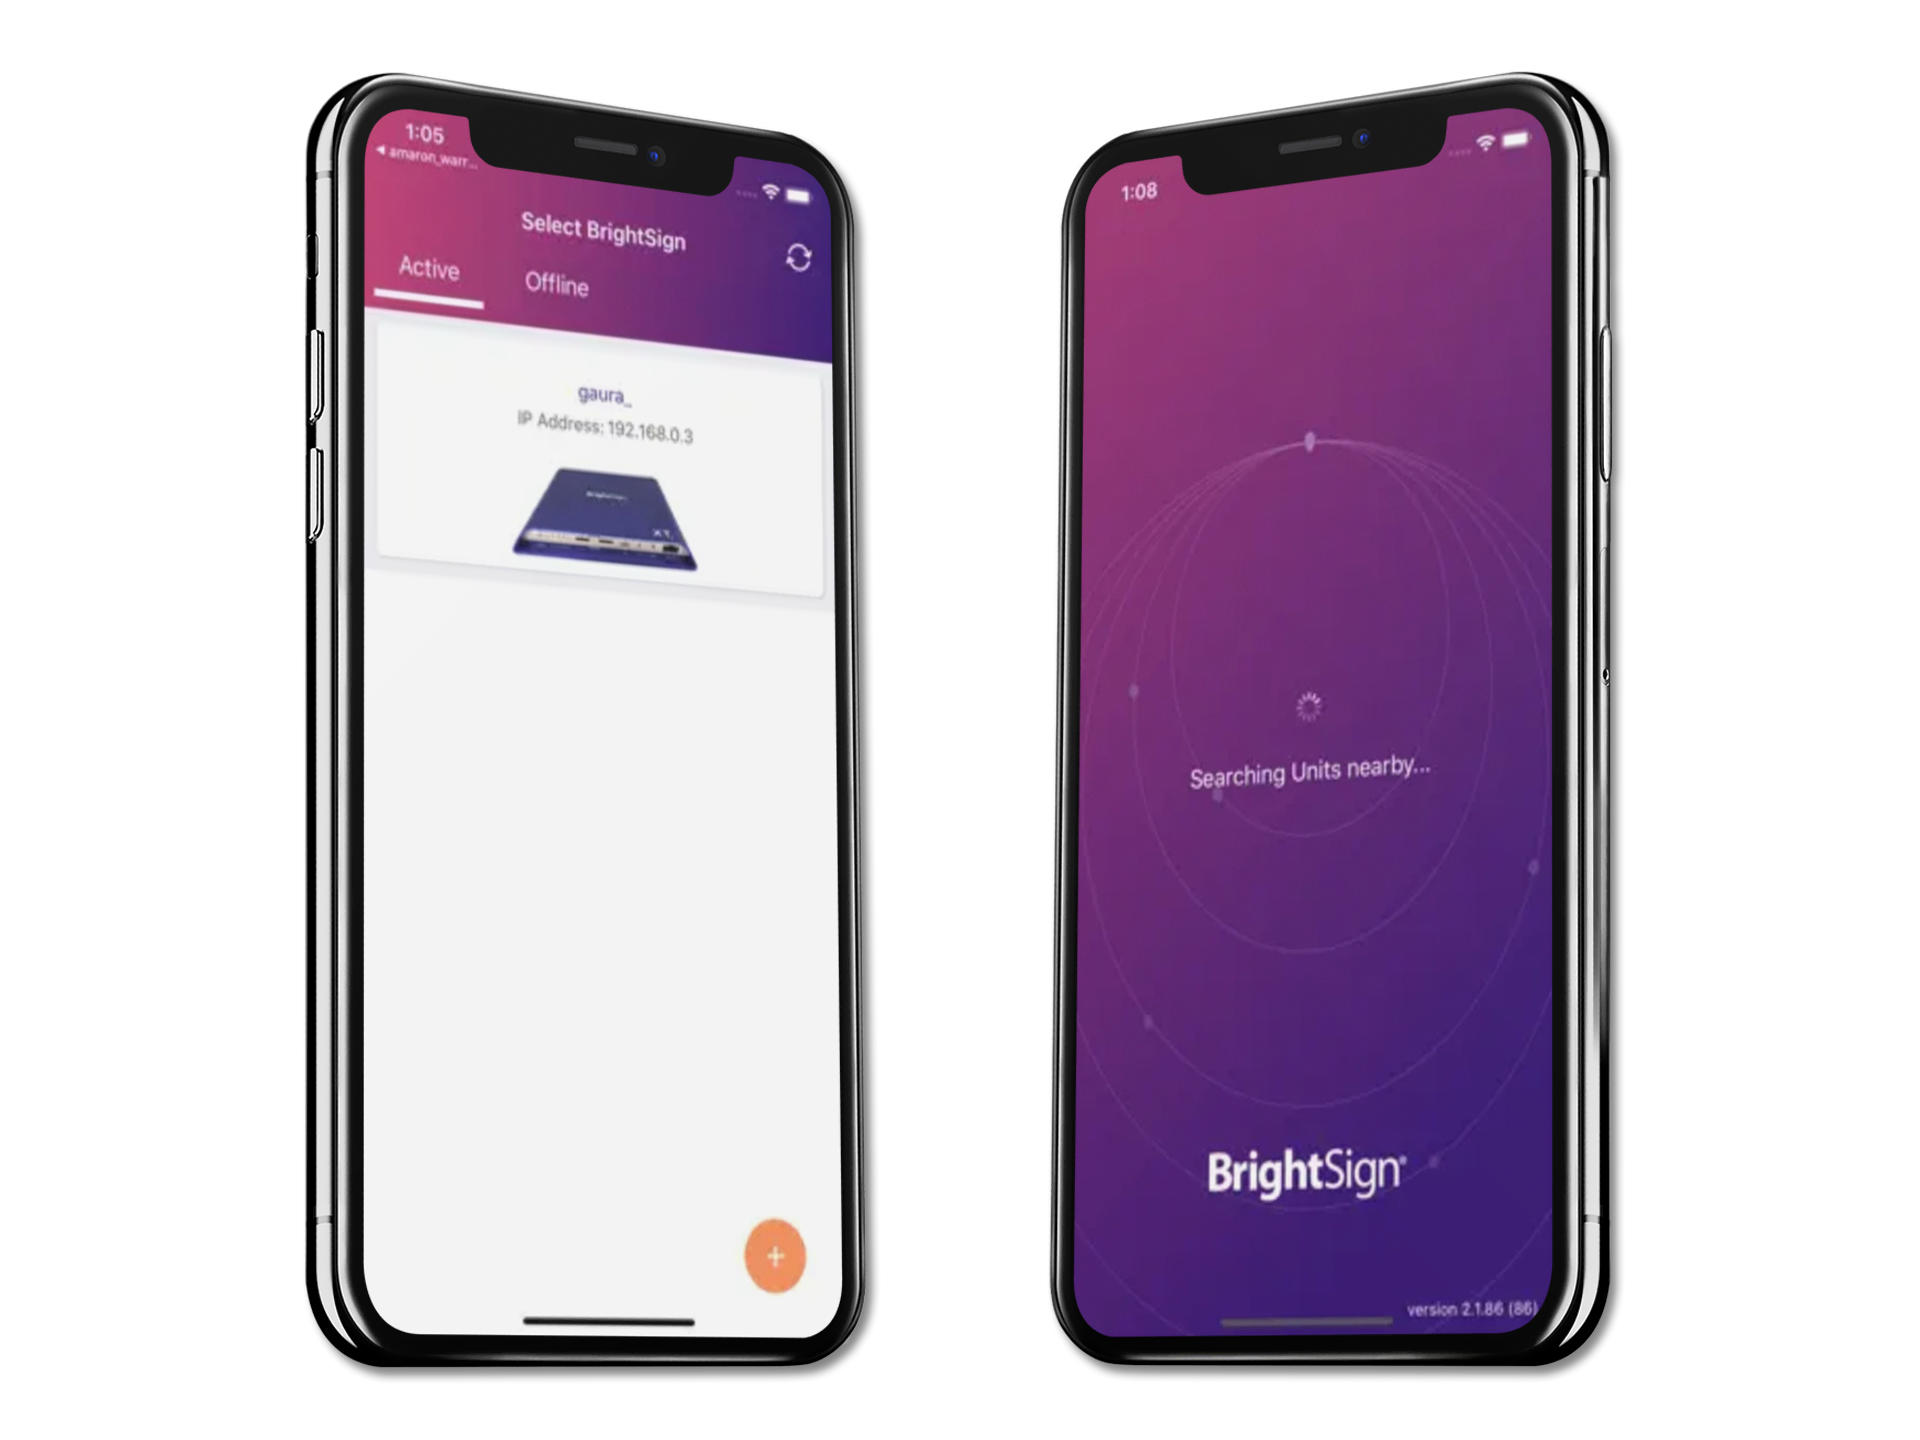 BrightSignアプリが2台のiPhone Xにまたがって表示される